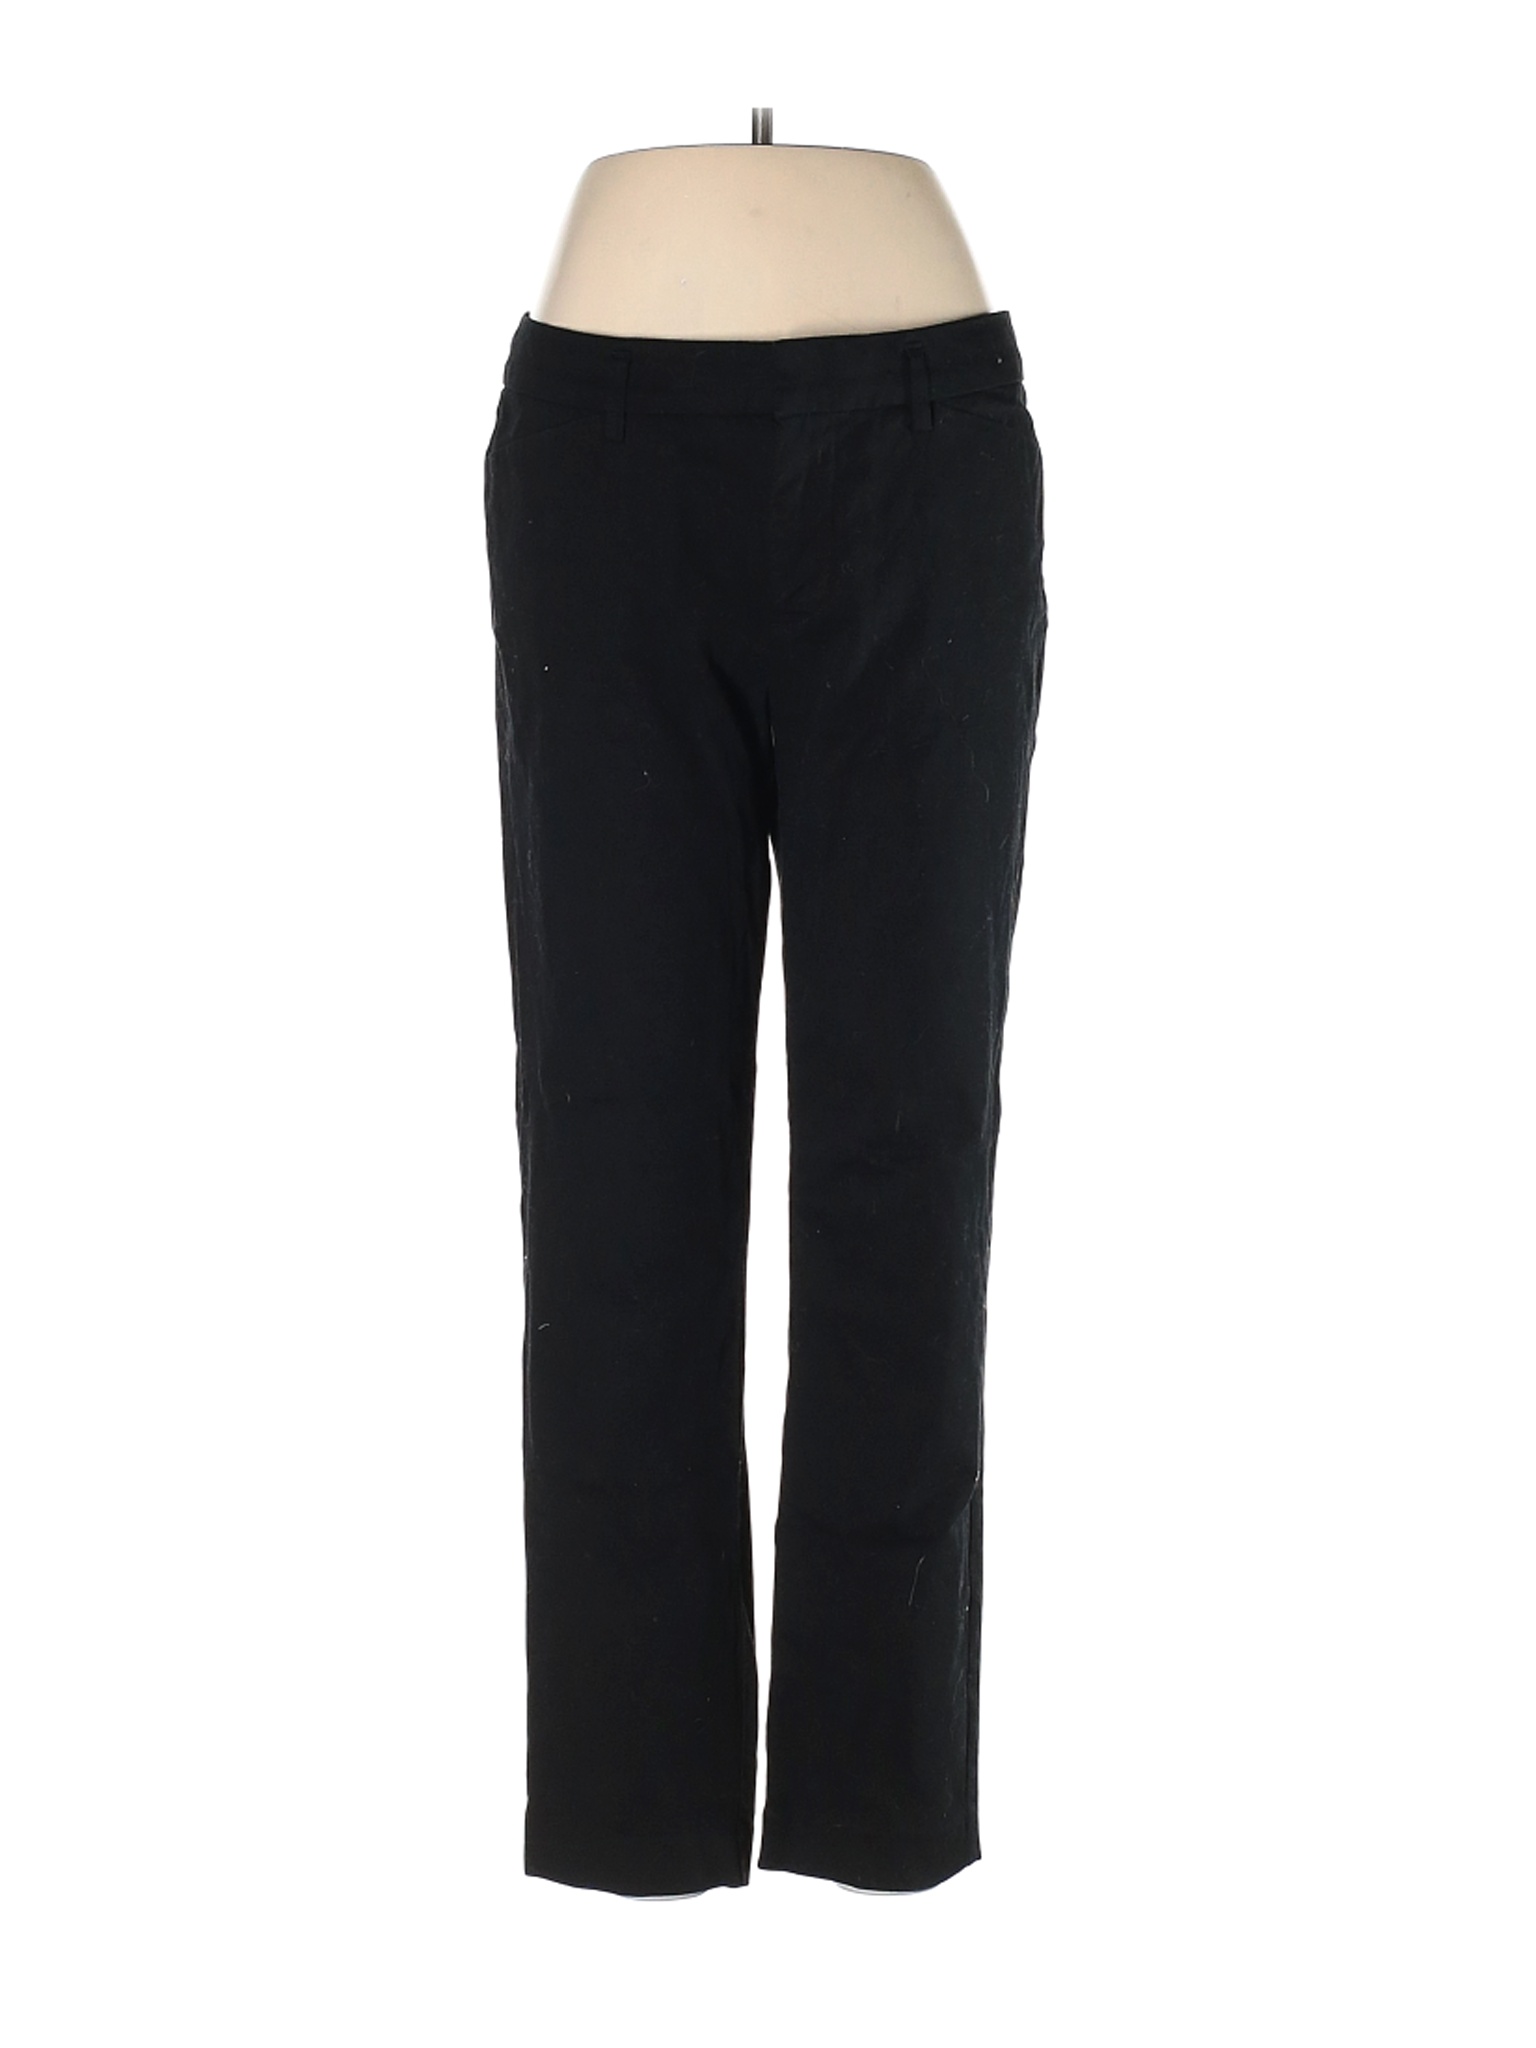 Jcpenney Women Black Dress Pants 8 | eBay